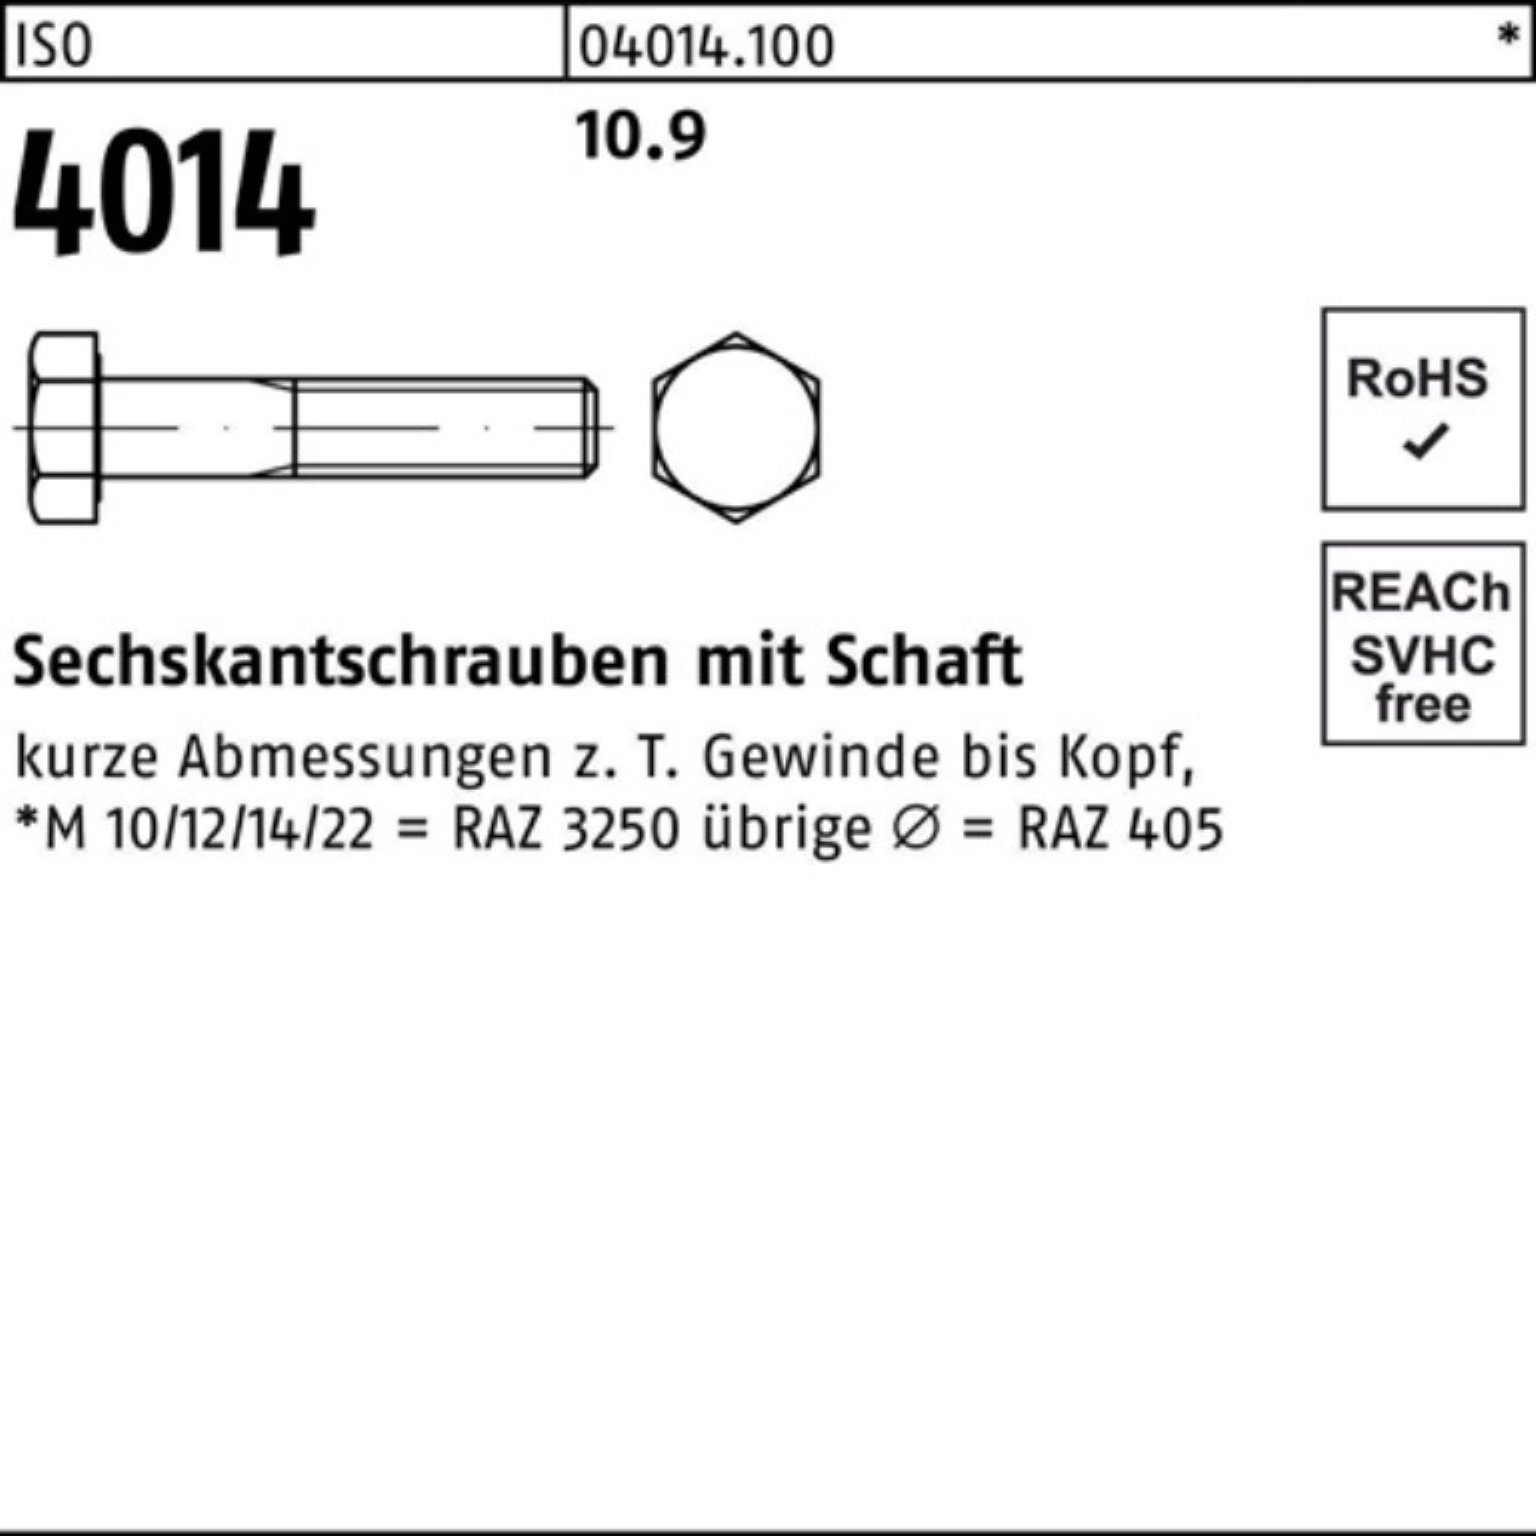 Bufab Sechskantschraube 100er Sechskantschraube IS 110 10.9 Stück Schaft Pack 4014 M30x ISO 1